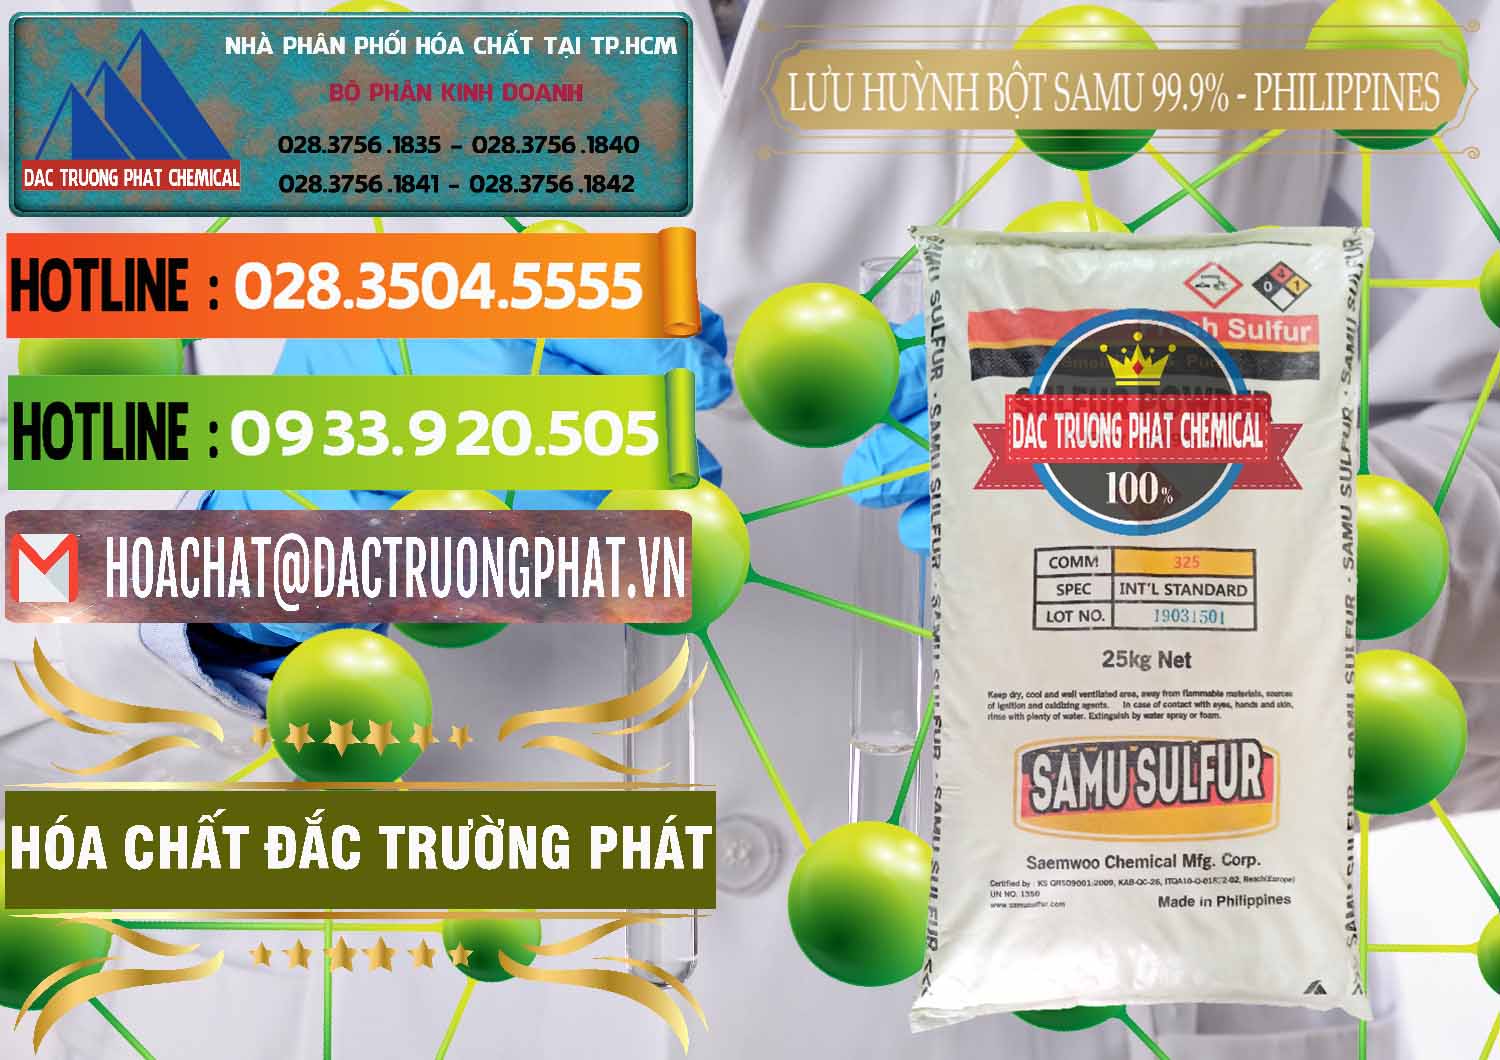 Công ty chuyên bán và cung cấp Lưu huỳnh Bột - Sulfur Powder Samu Philippines - 0201 - Nhà nhập khẩu - phân phối hóa chất tại TP.HCM - cungcaphoachat.com.vn